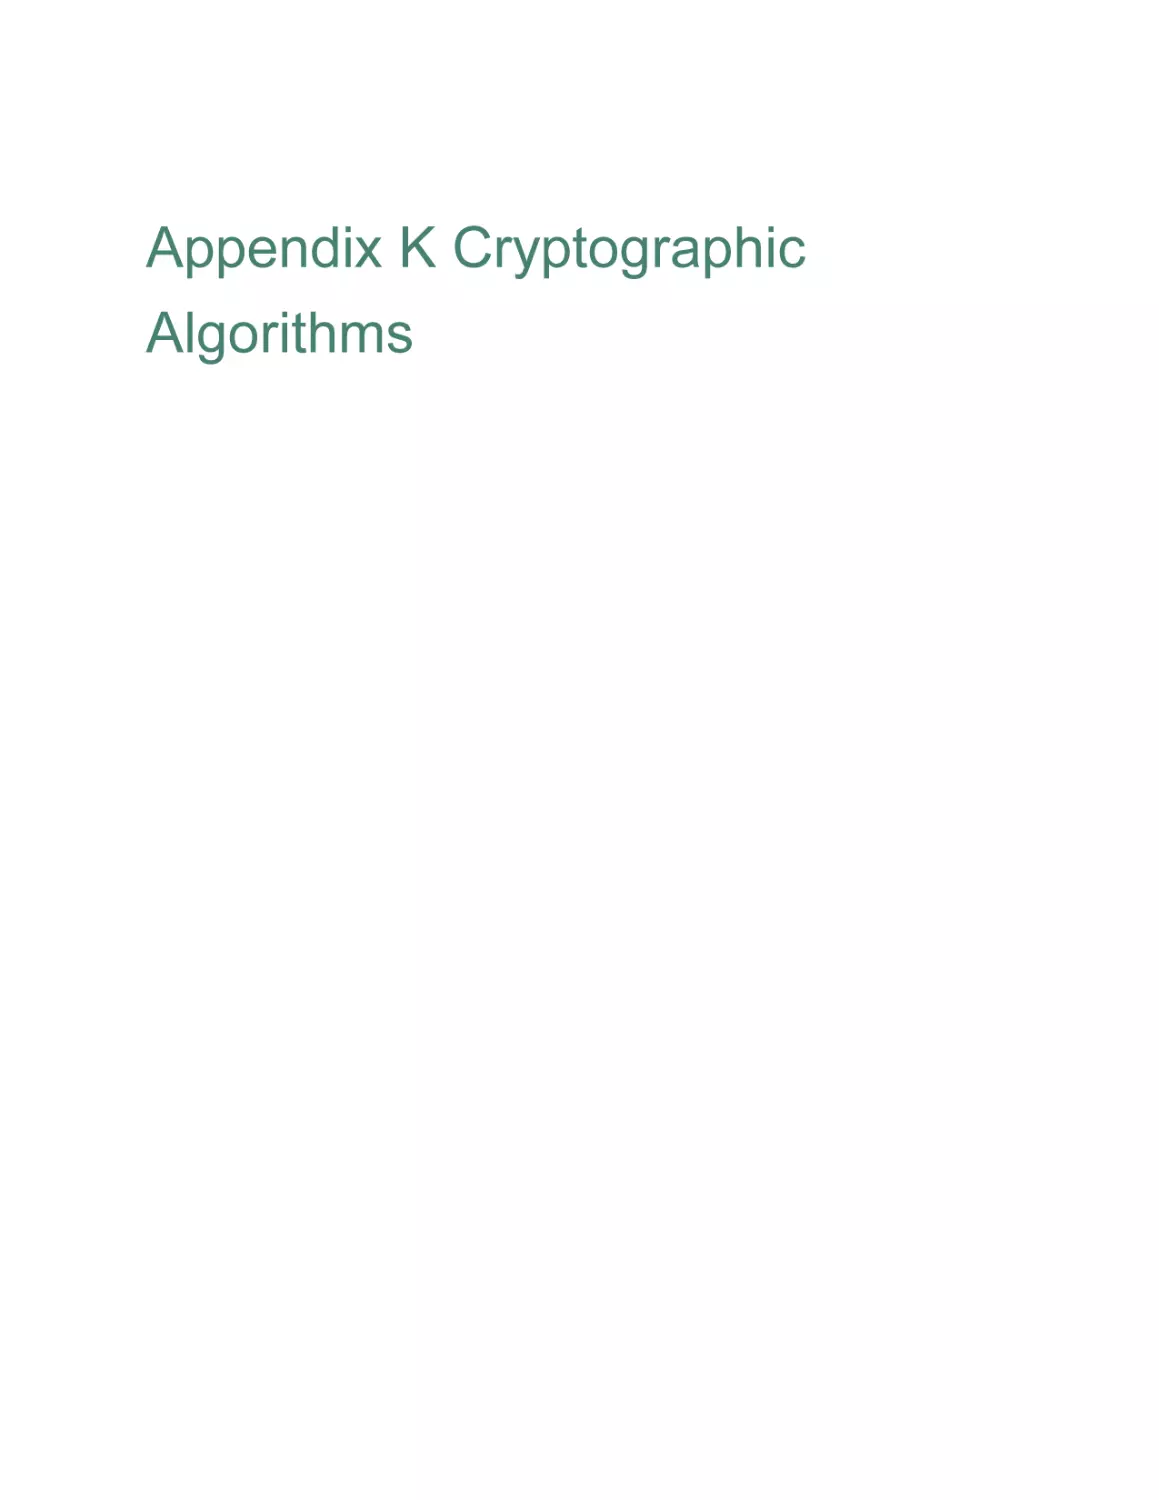 Appendix K Cryptographic Algorithms